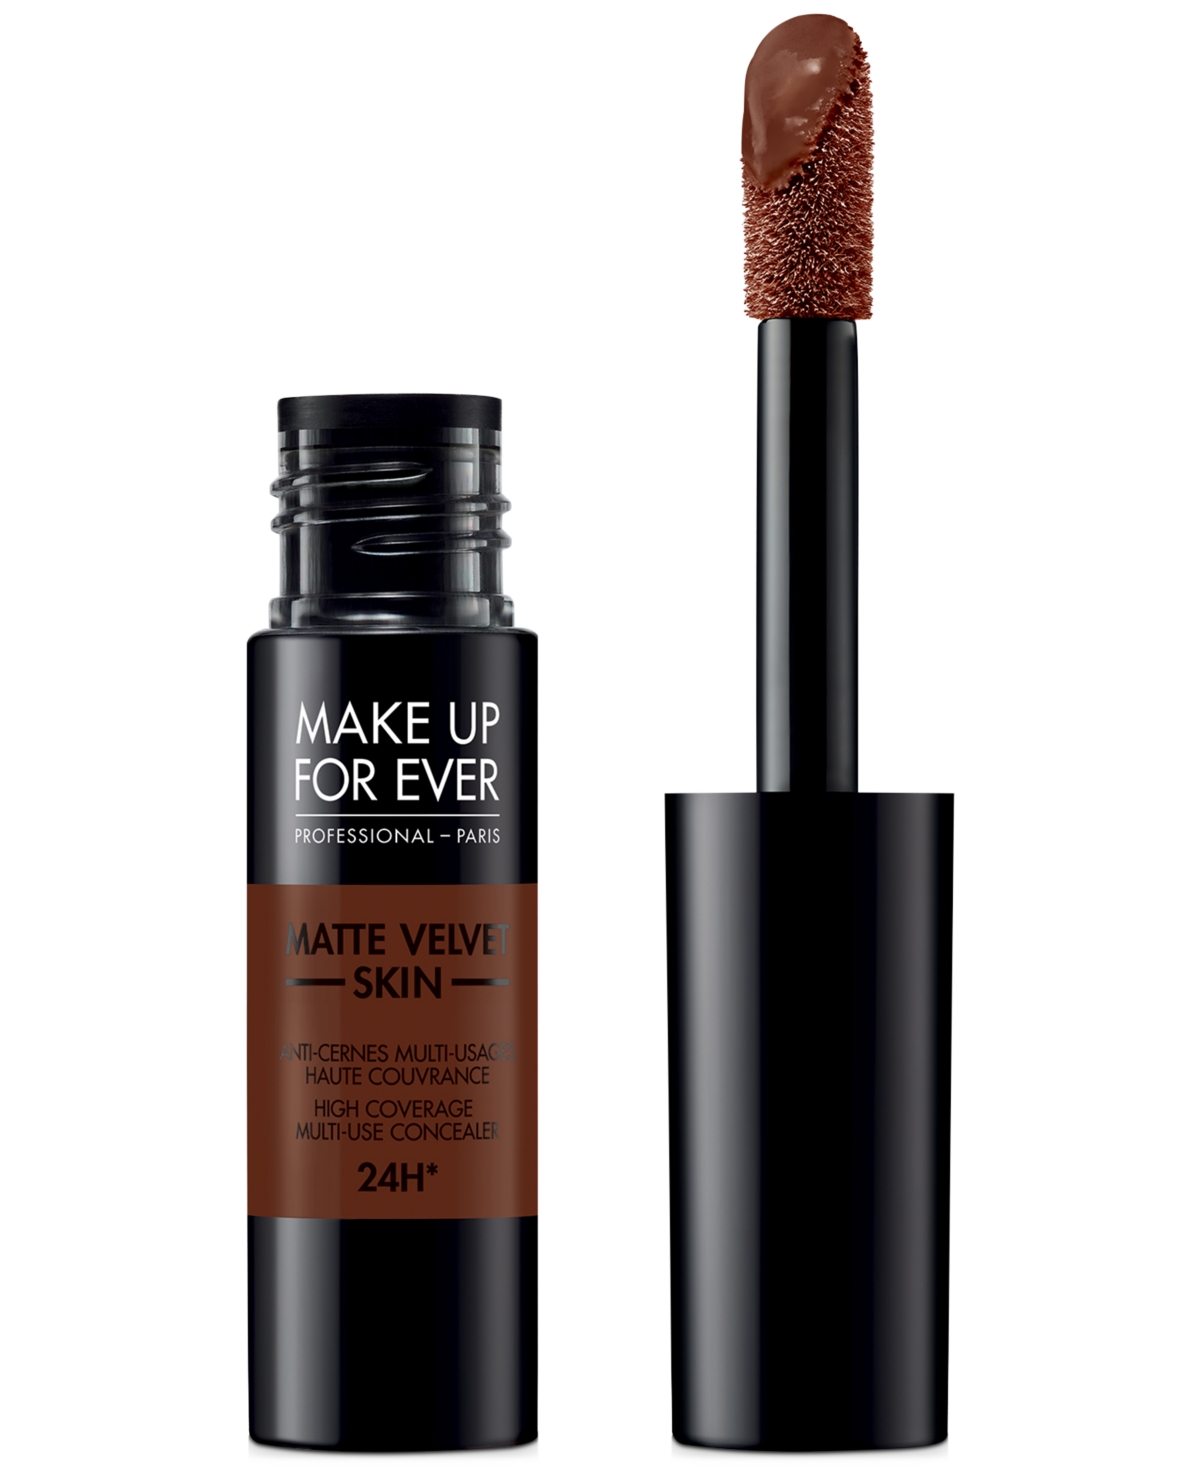 Make Up For Ever Matte Velvet Skin High Coverage Multi-Use Concealer